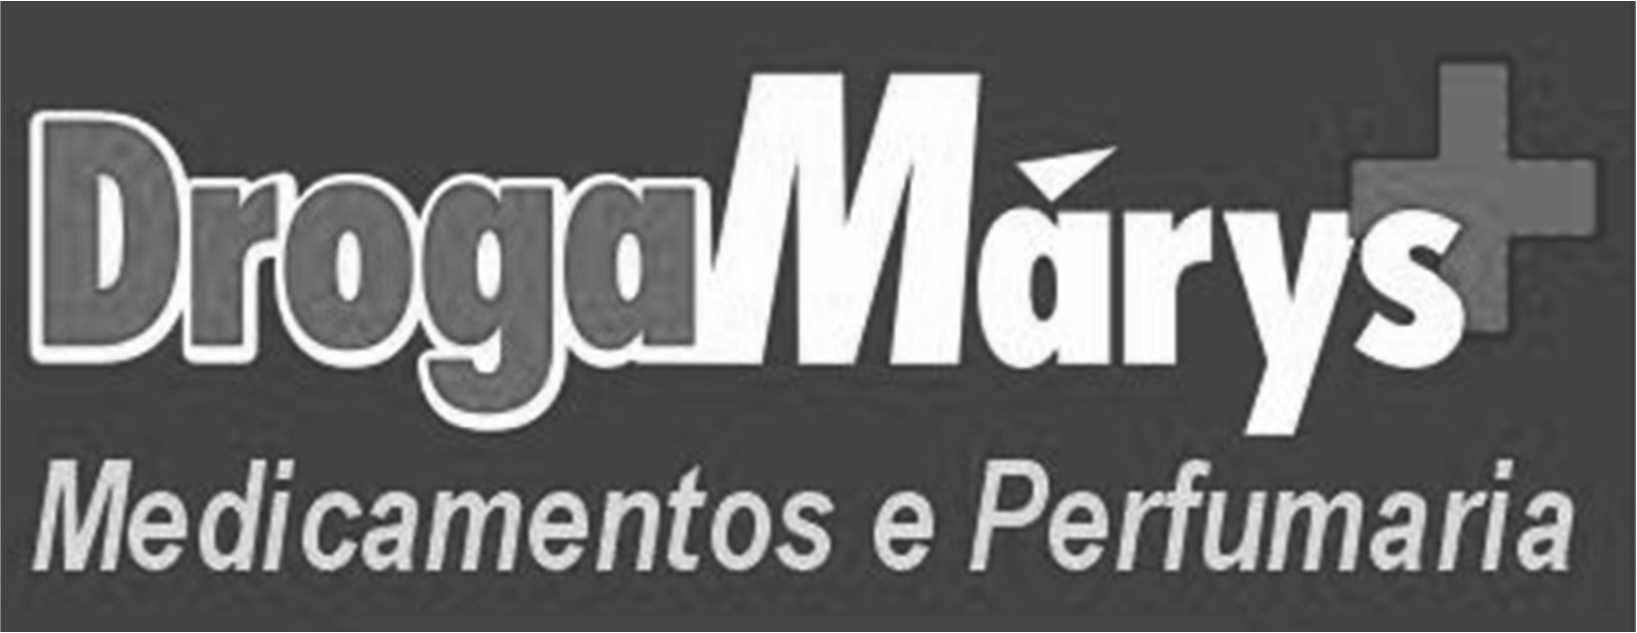 Logo_DrogaMarys_cinza